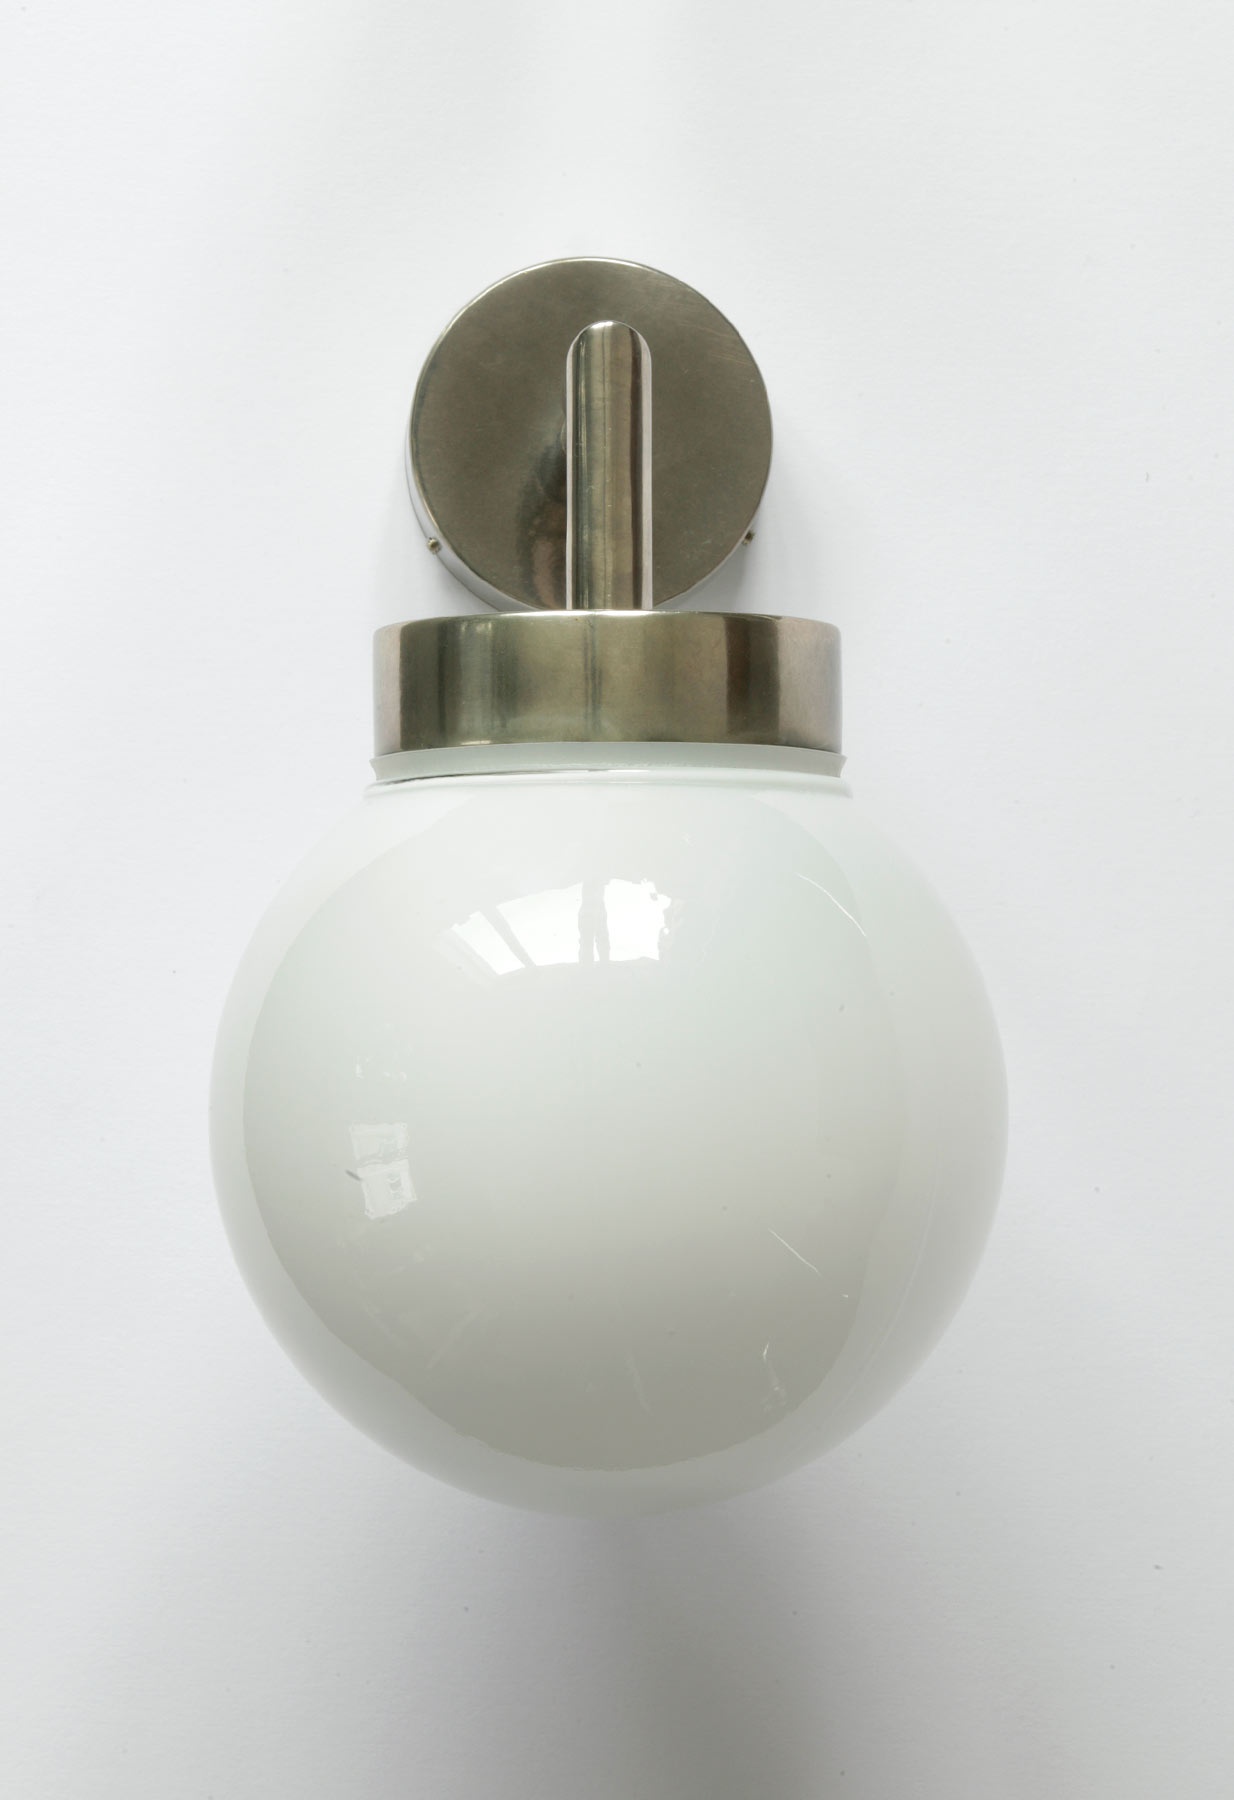 Badezimmer-Wandlampe mit Glaskugel, Ø 15 cm: Kleine Bad-Wandleuchte mit 15 cm-Glaskugel, hier Messing alt-silbern patiniert, opales Glas